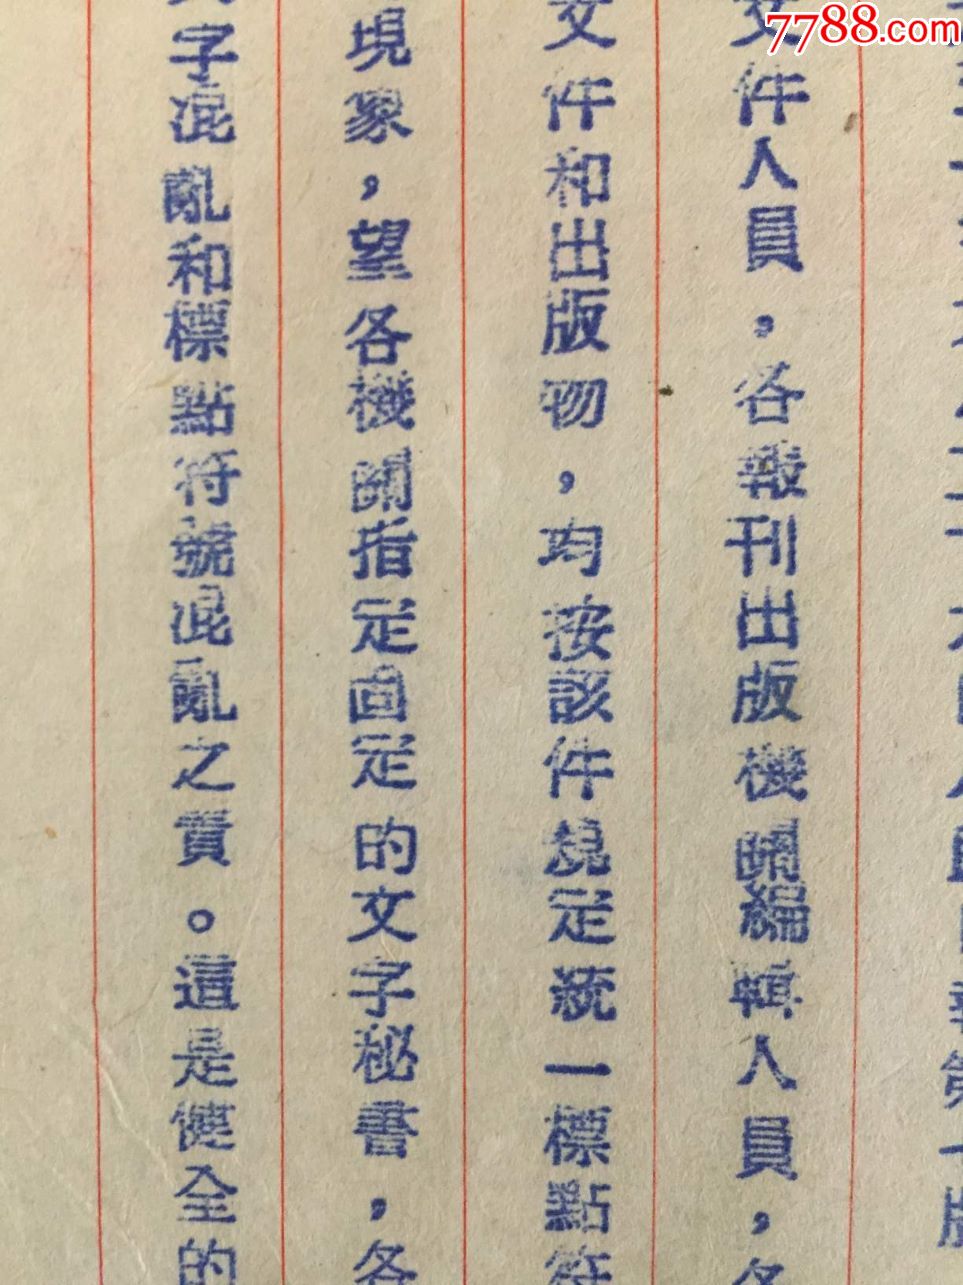 解放初期,1951年,指定文字秘书订正标点符号使用命令:皖南人民行政